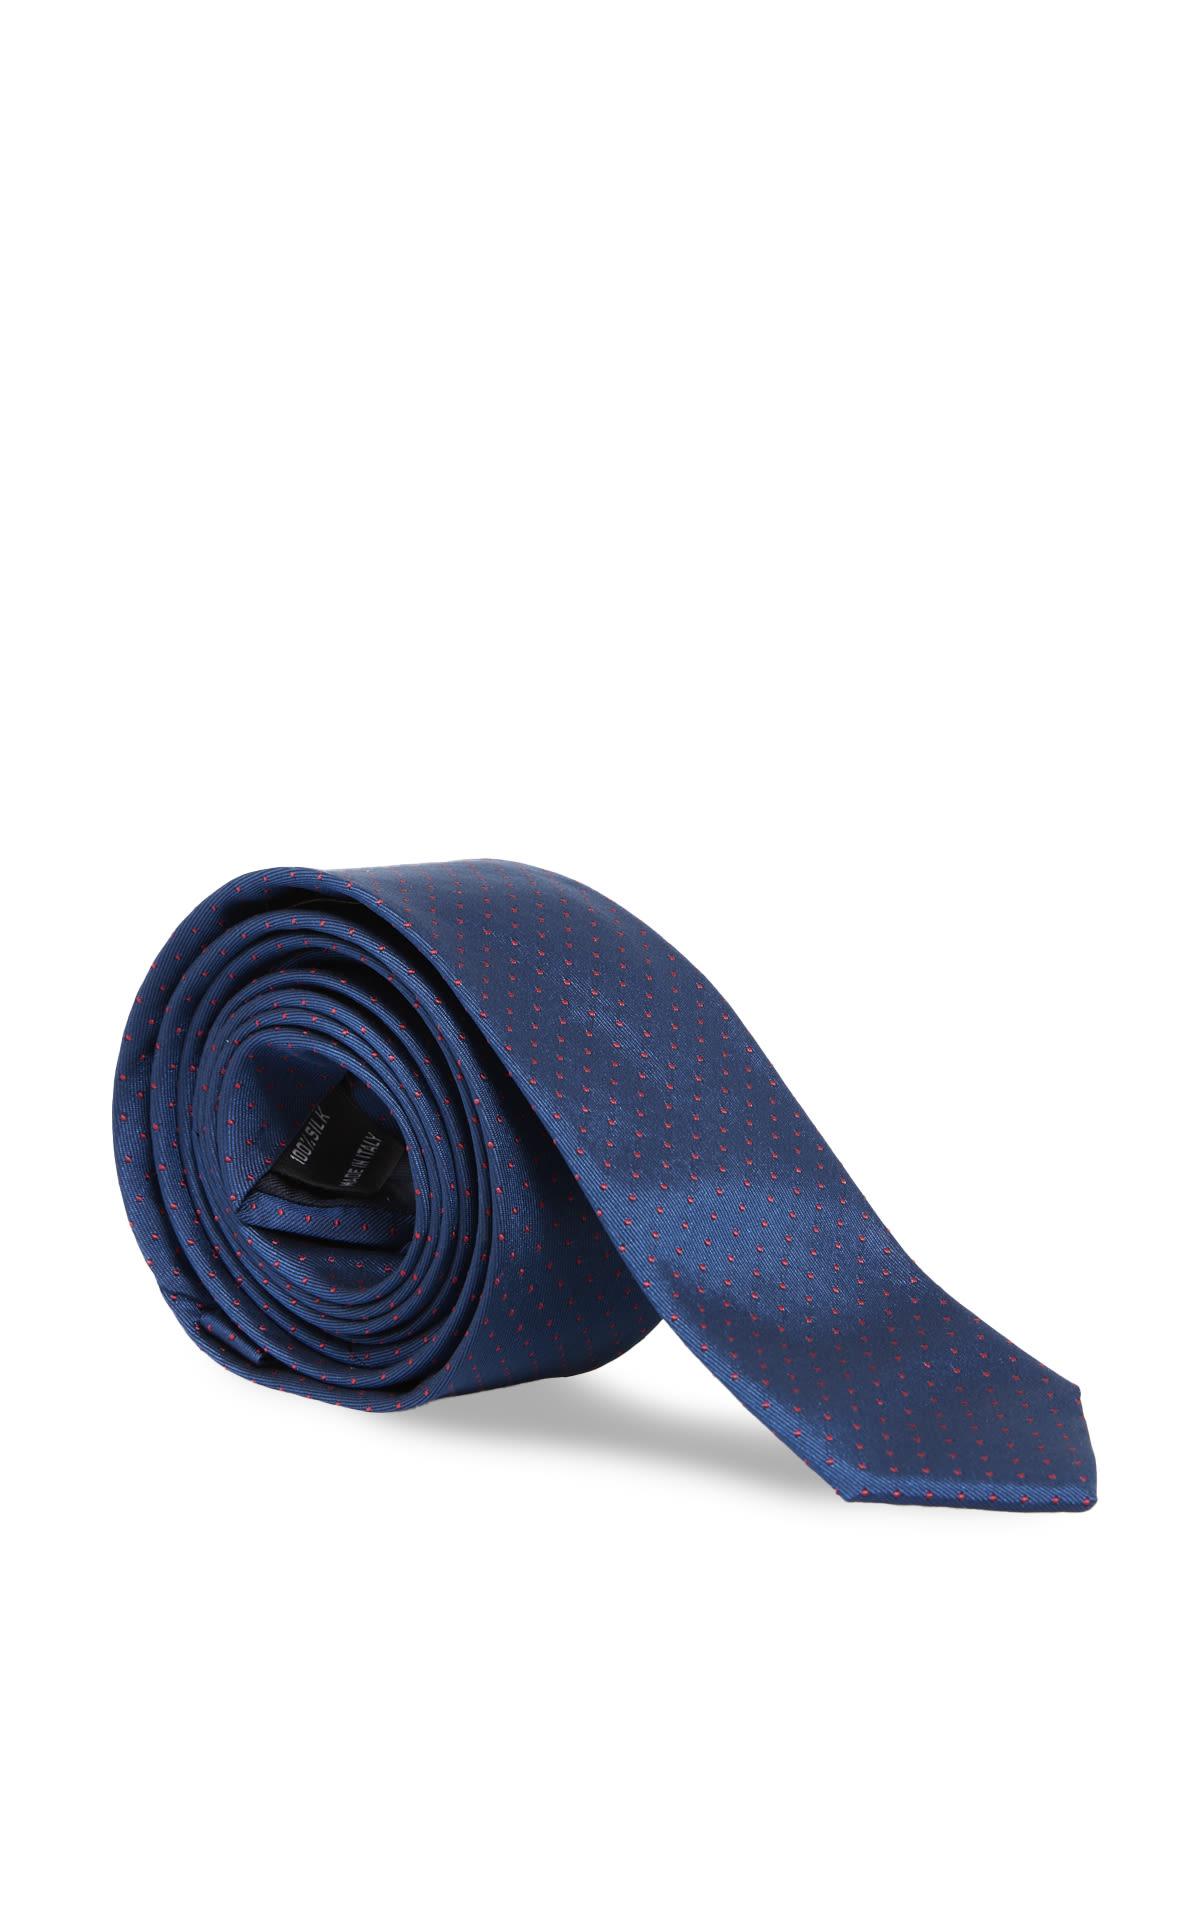 Blue tie* 